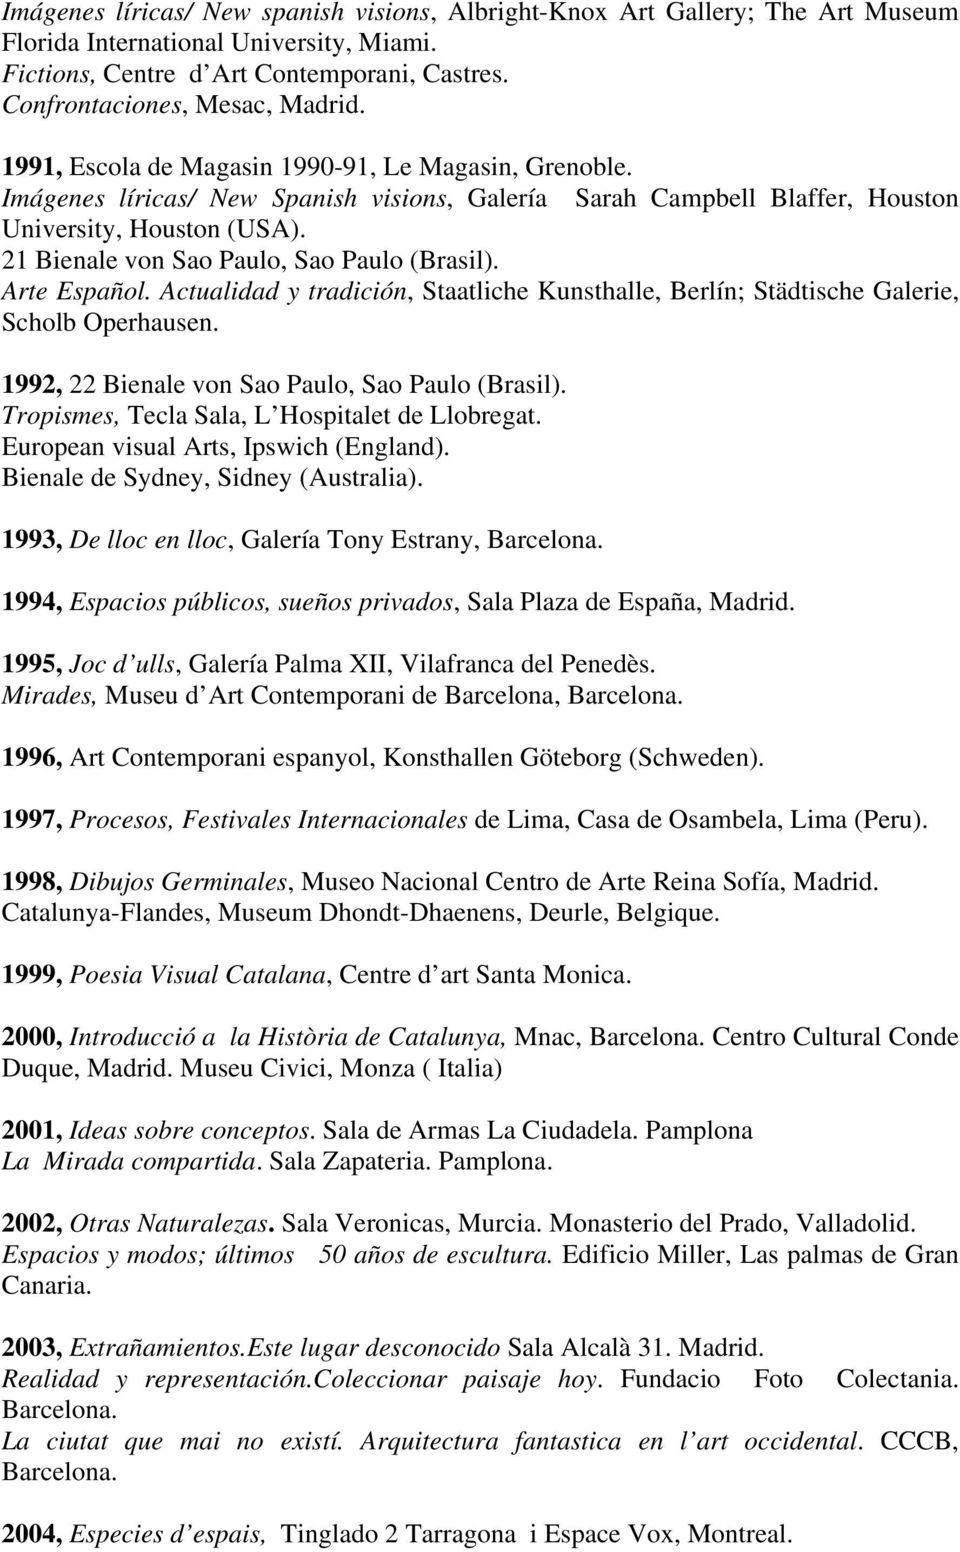 21 Bienale von Sao Paulo, Sao Paulo (Brasil). Arte Español. Actualidad y tradición, Staatliche Kunsthalle, Berlín; Städtische Galerie, Scholb Operhausen.